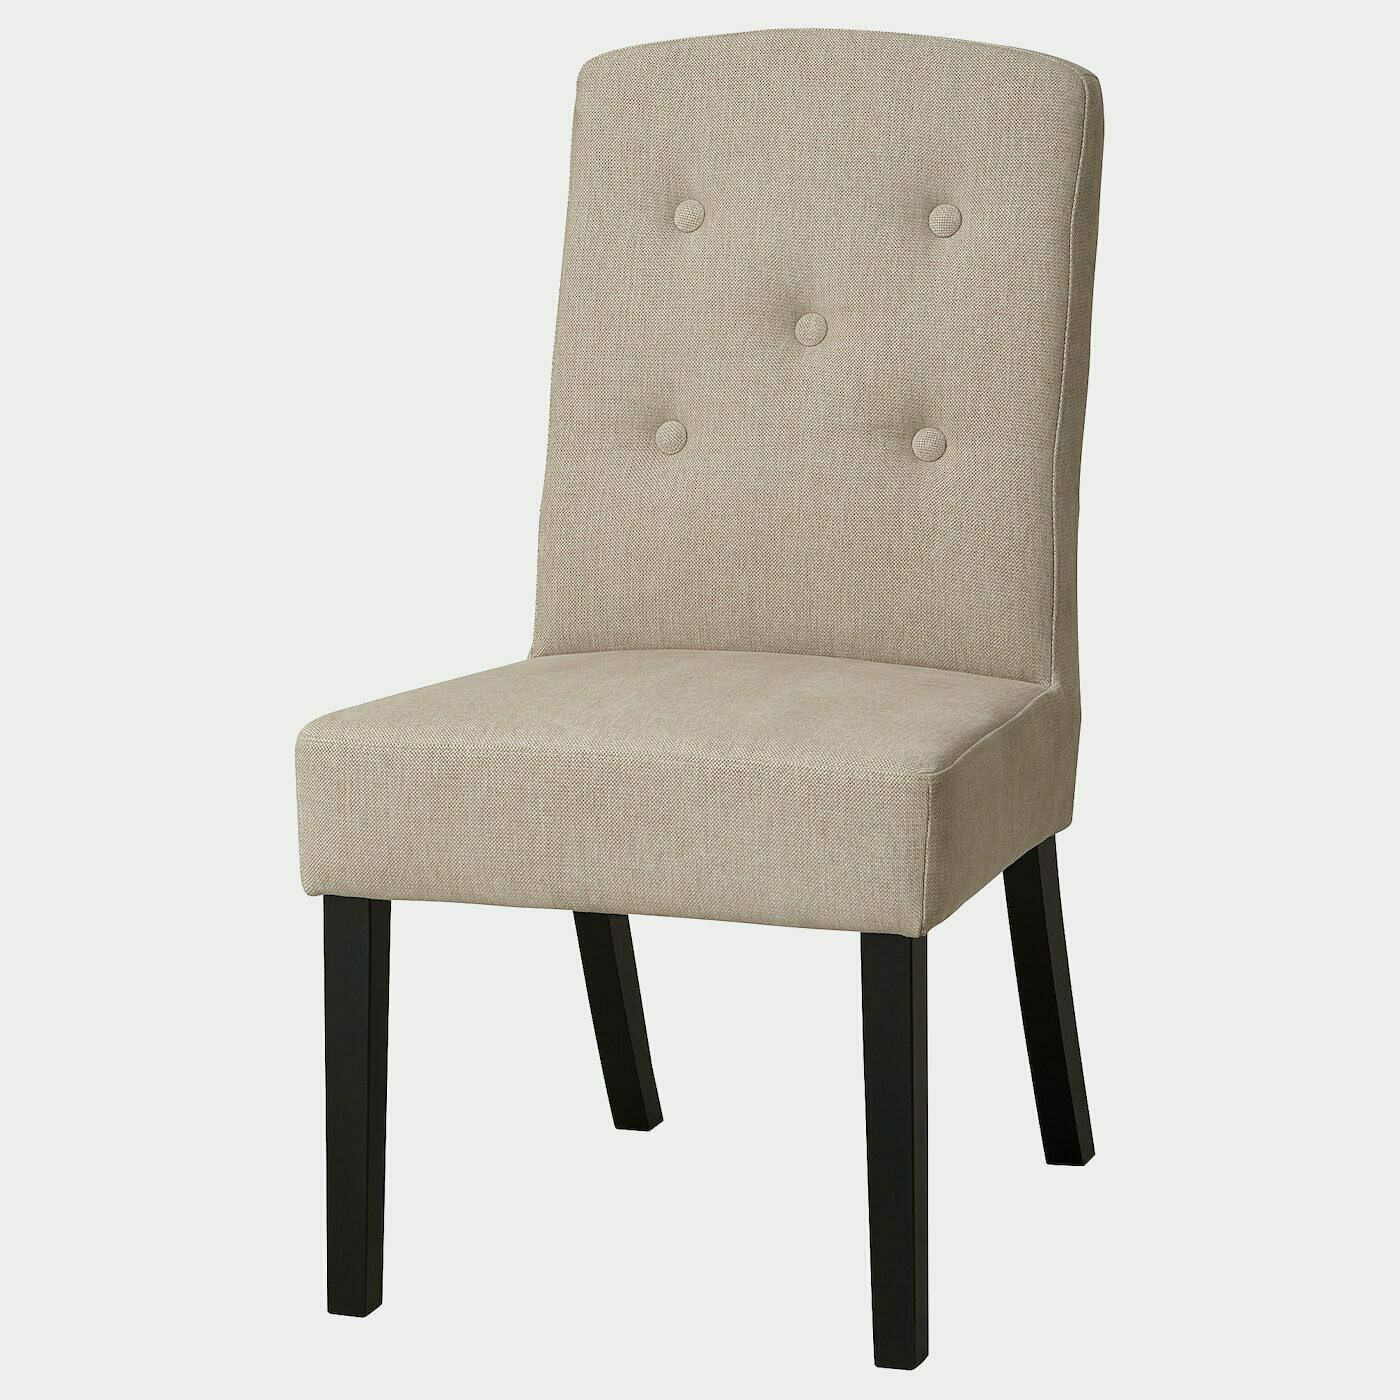 SVENARNE Stuhl  - Esszimmerstühle - Möbel Ideen für dein Zuhause von Home Trends. Möbel Trends von Social Media Influencer für dein Skandi Zuhause.